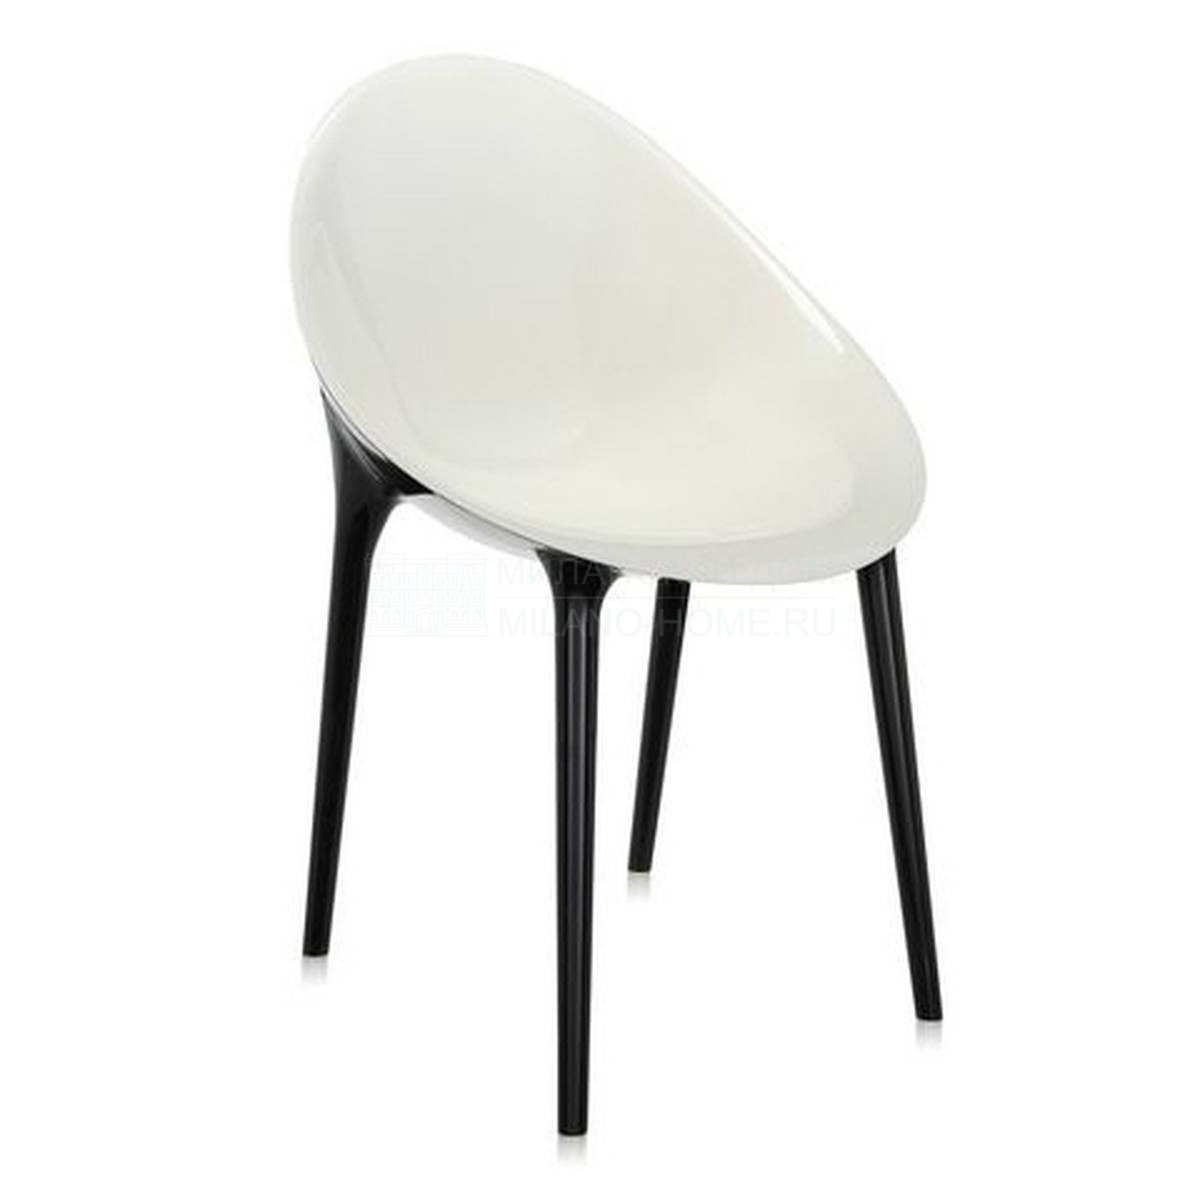 Металлический / Пластиковый стул Mr. Impossible из Италии фабрики KARTELL